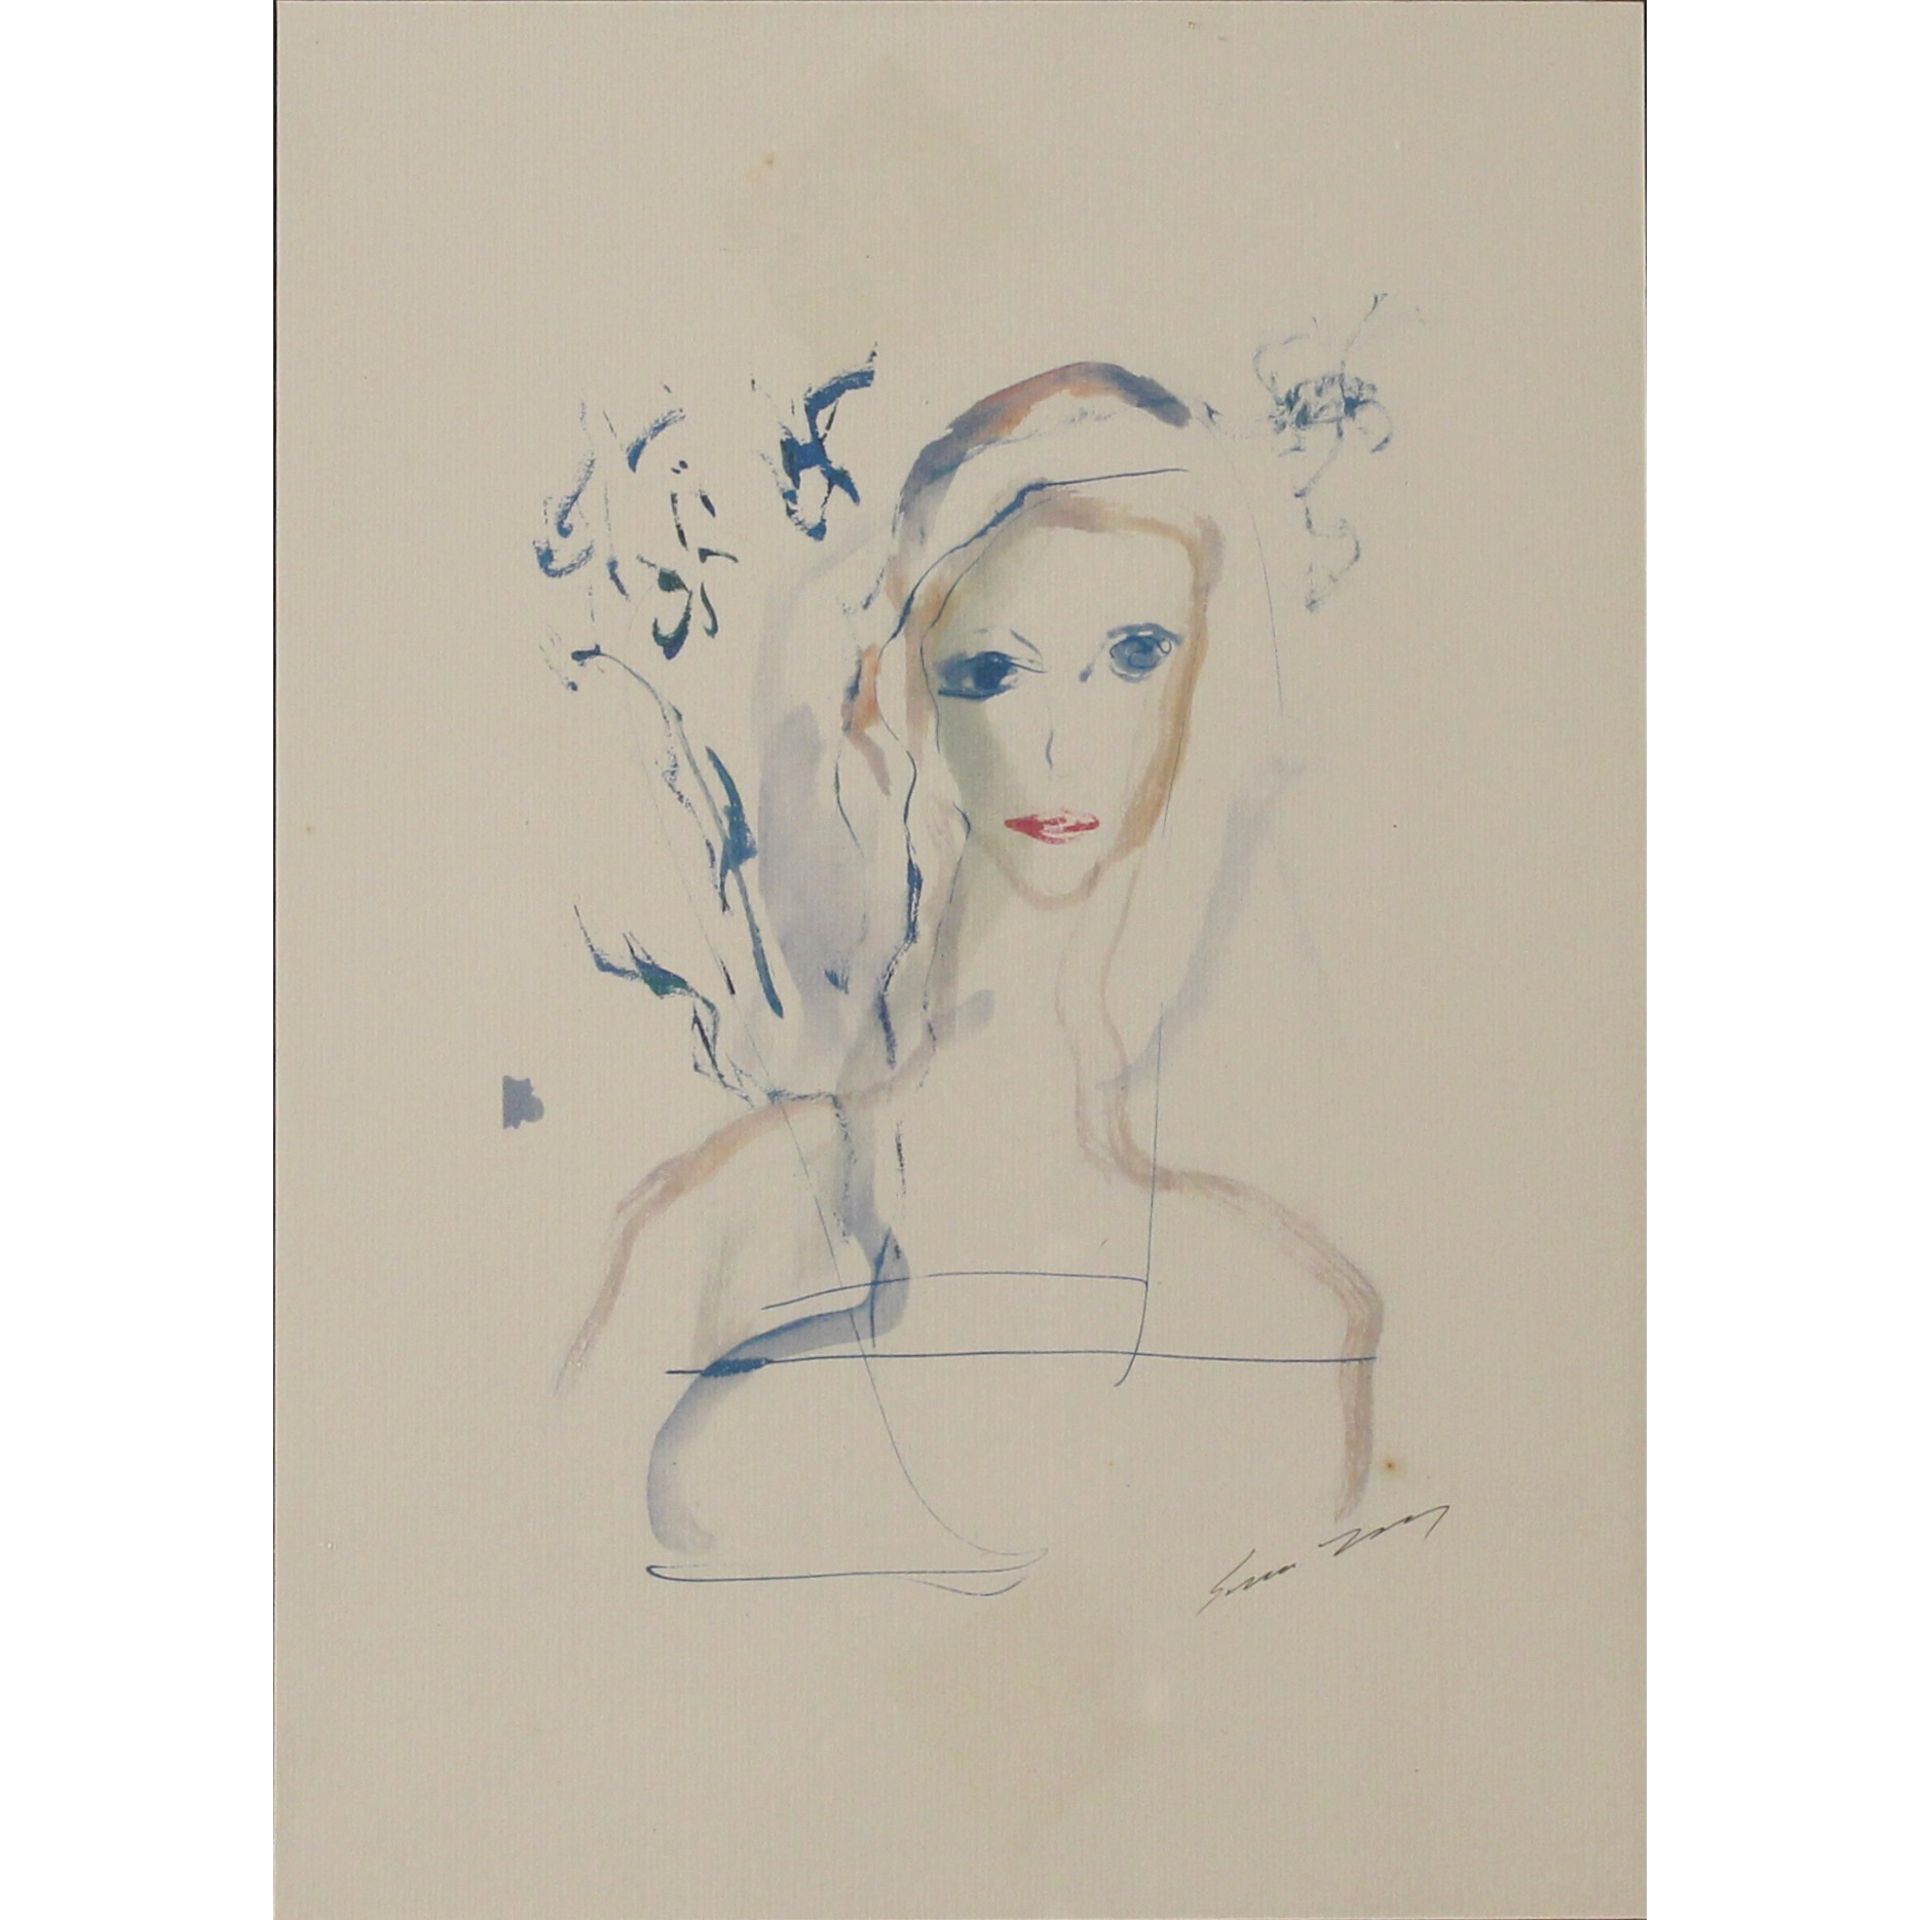 Ernesto Treccani (1920/2009) "Ritratto di donna" - "Portrait of a Woman"